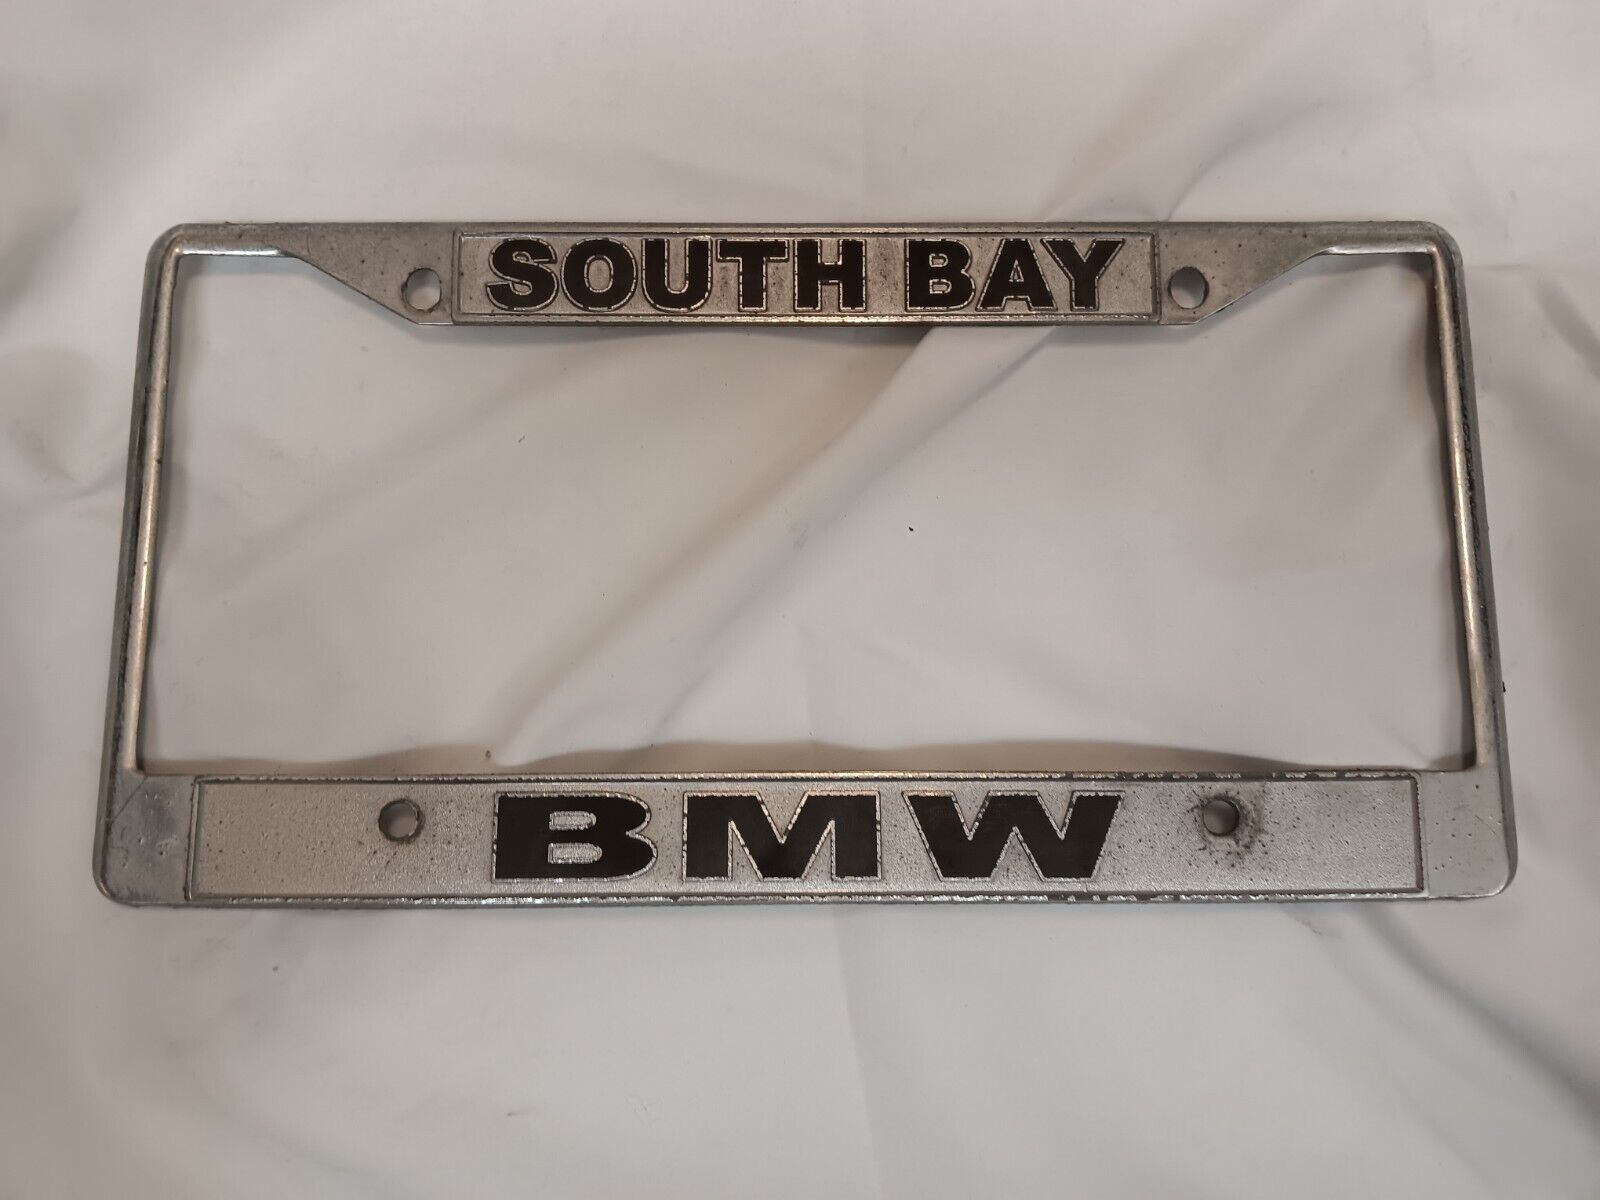 South Bay BMW, CA Car Dealer Metal License Plate Frame